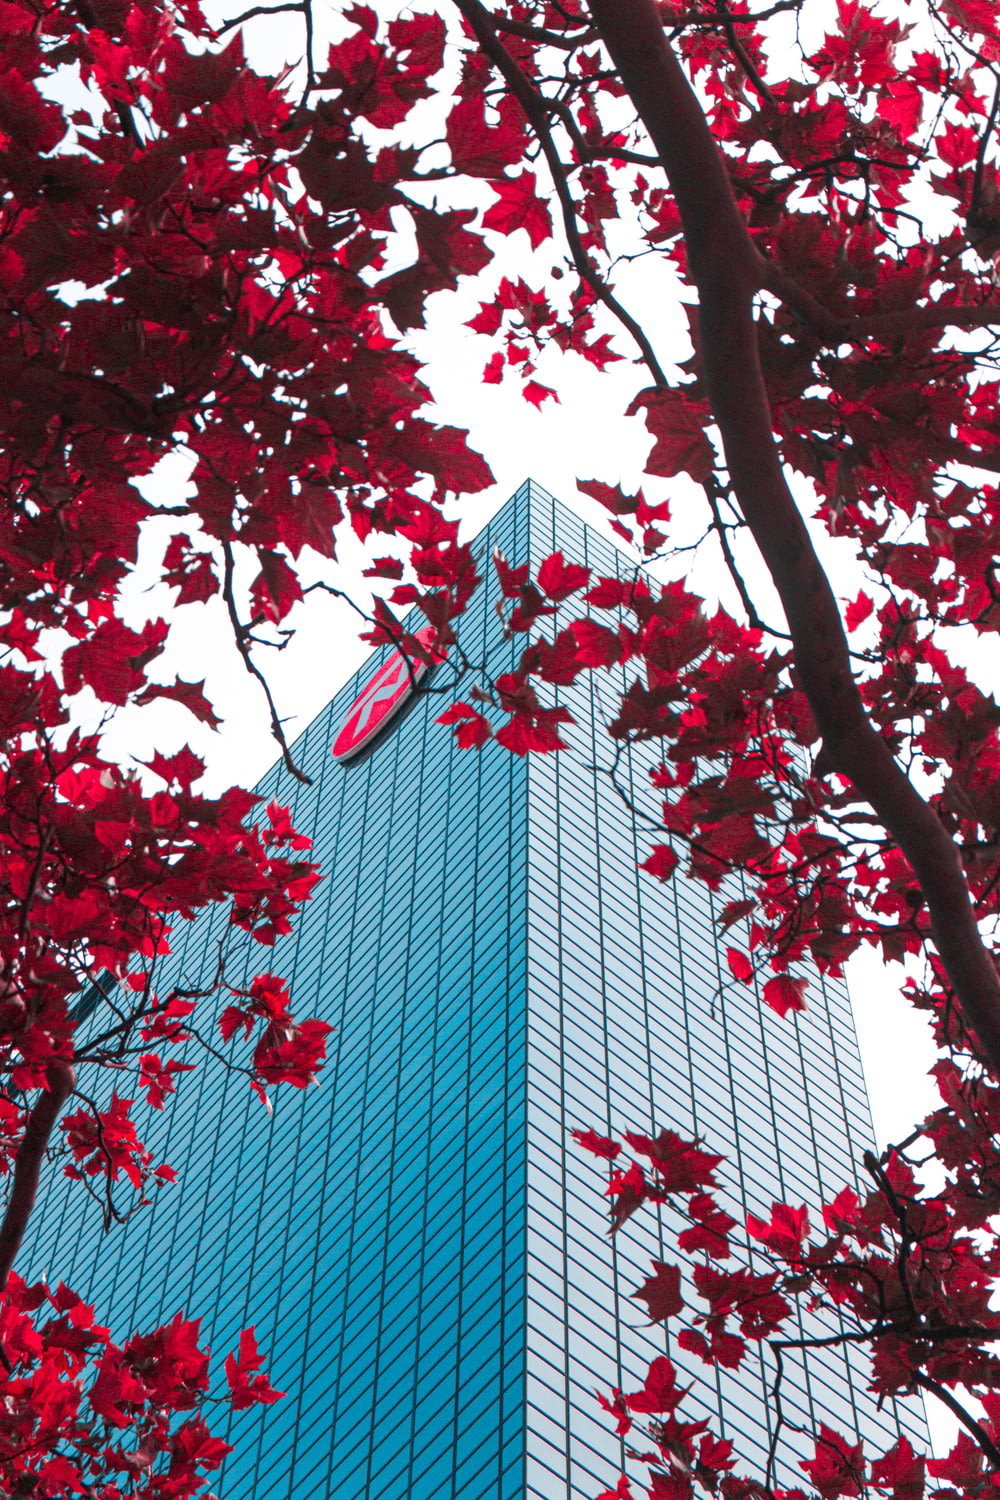 foglie rosse sull'albero vicino all'edificio